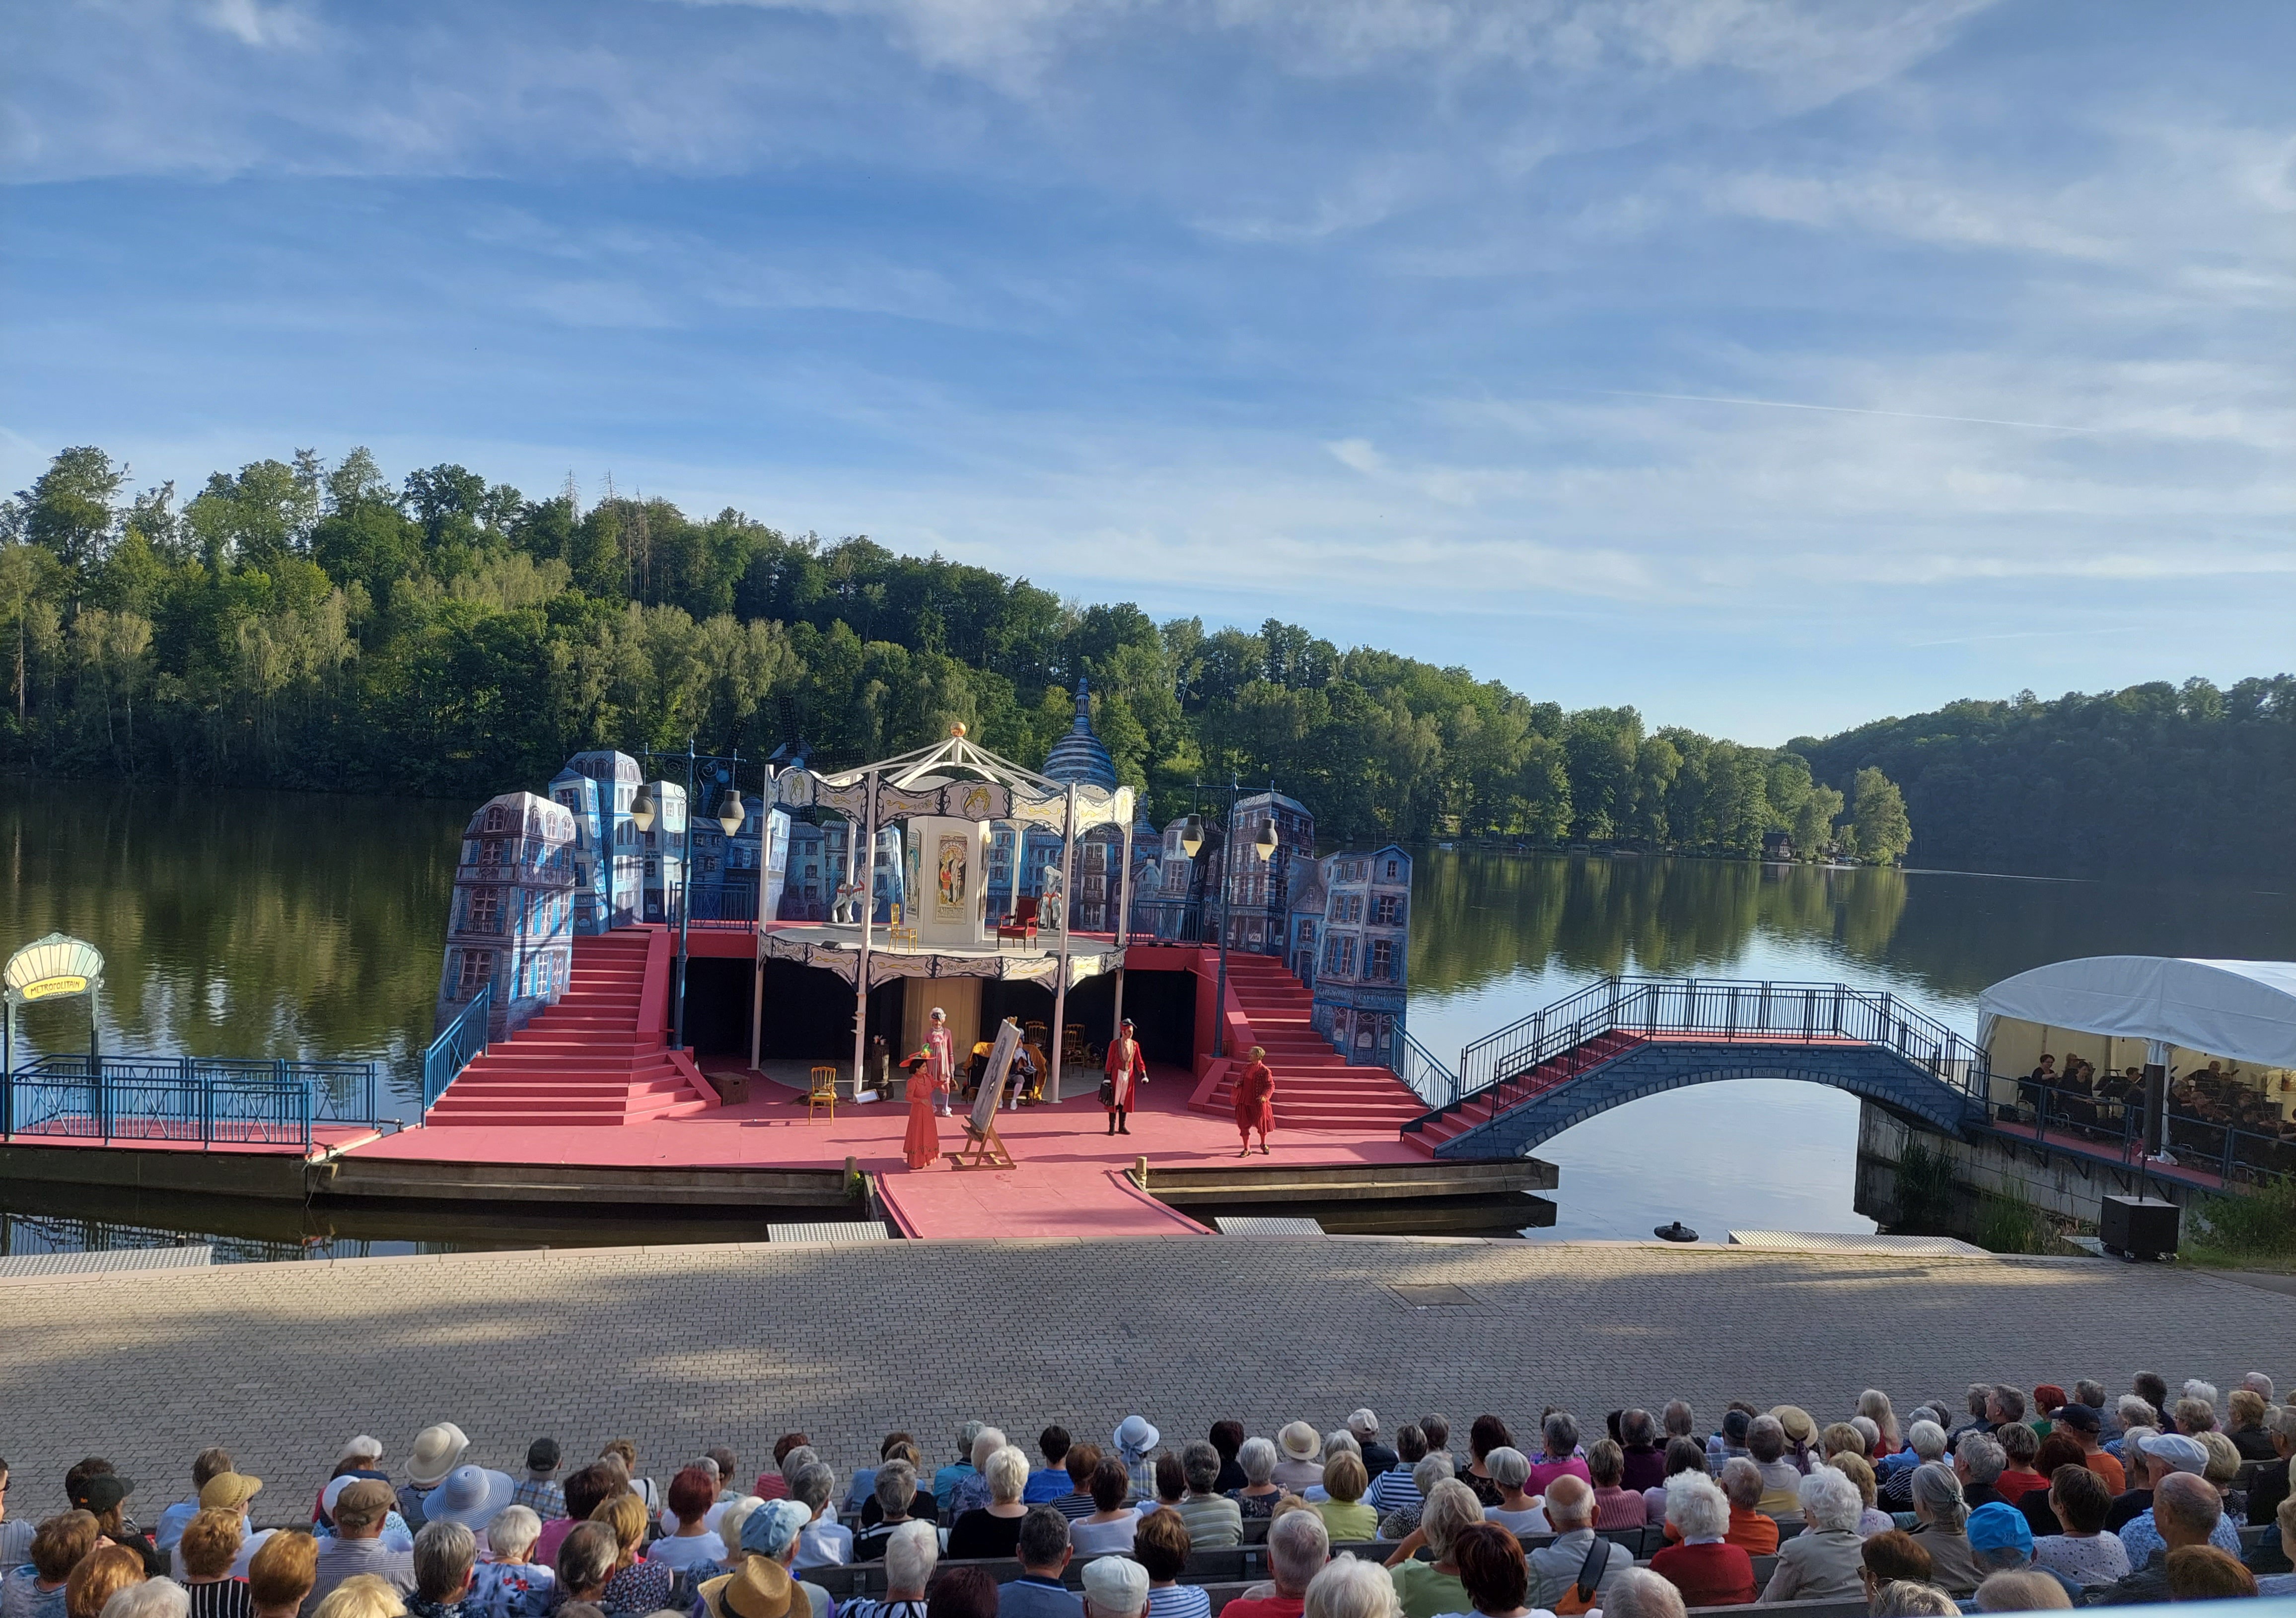 Das Bild zeigt die Bühne in Aktion. Die Treppe und Bühne sind mit rotem Teppich überzogen. Mehrere Schauspieler führen ein Stück auf. Im Vordergrund sitzen einige Personen auf der Zuschauertribüne. Im Hintergrund ist ein See und Wald zu sehen.